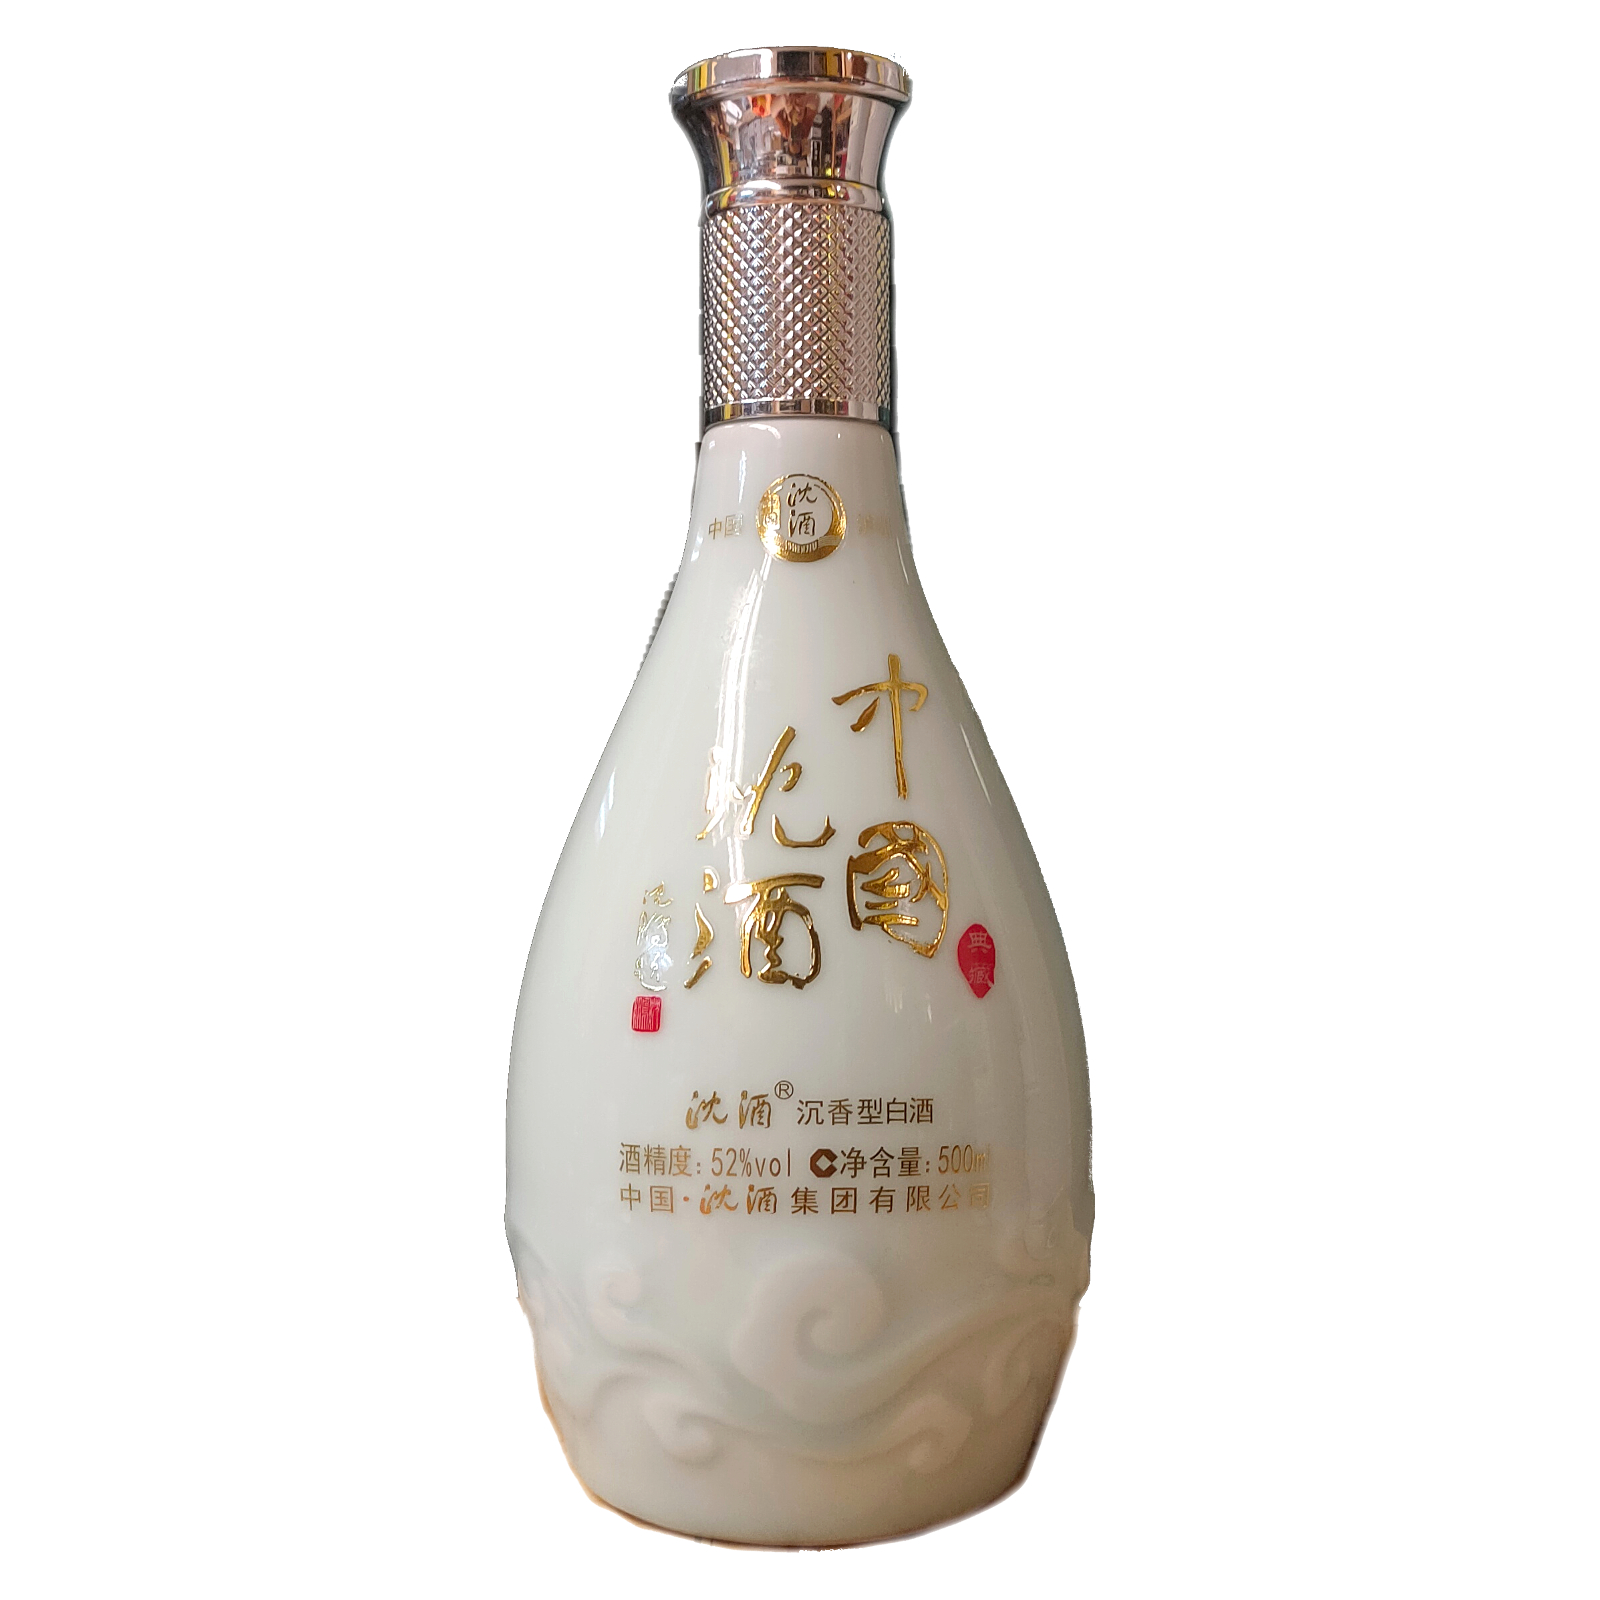 中国沈酒沉香窖藏52度沉香型(Chinese Shen Liquor Agarwood Cellar Aged 52% Agarwood Type)